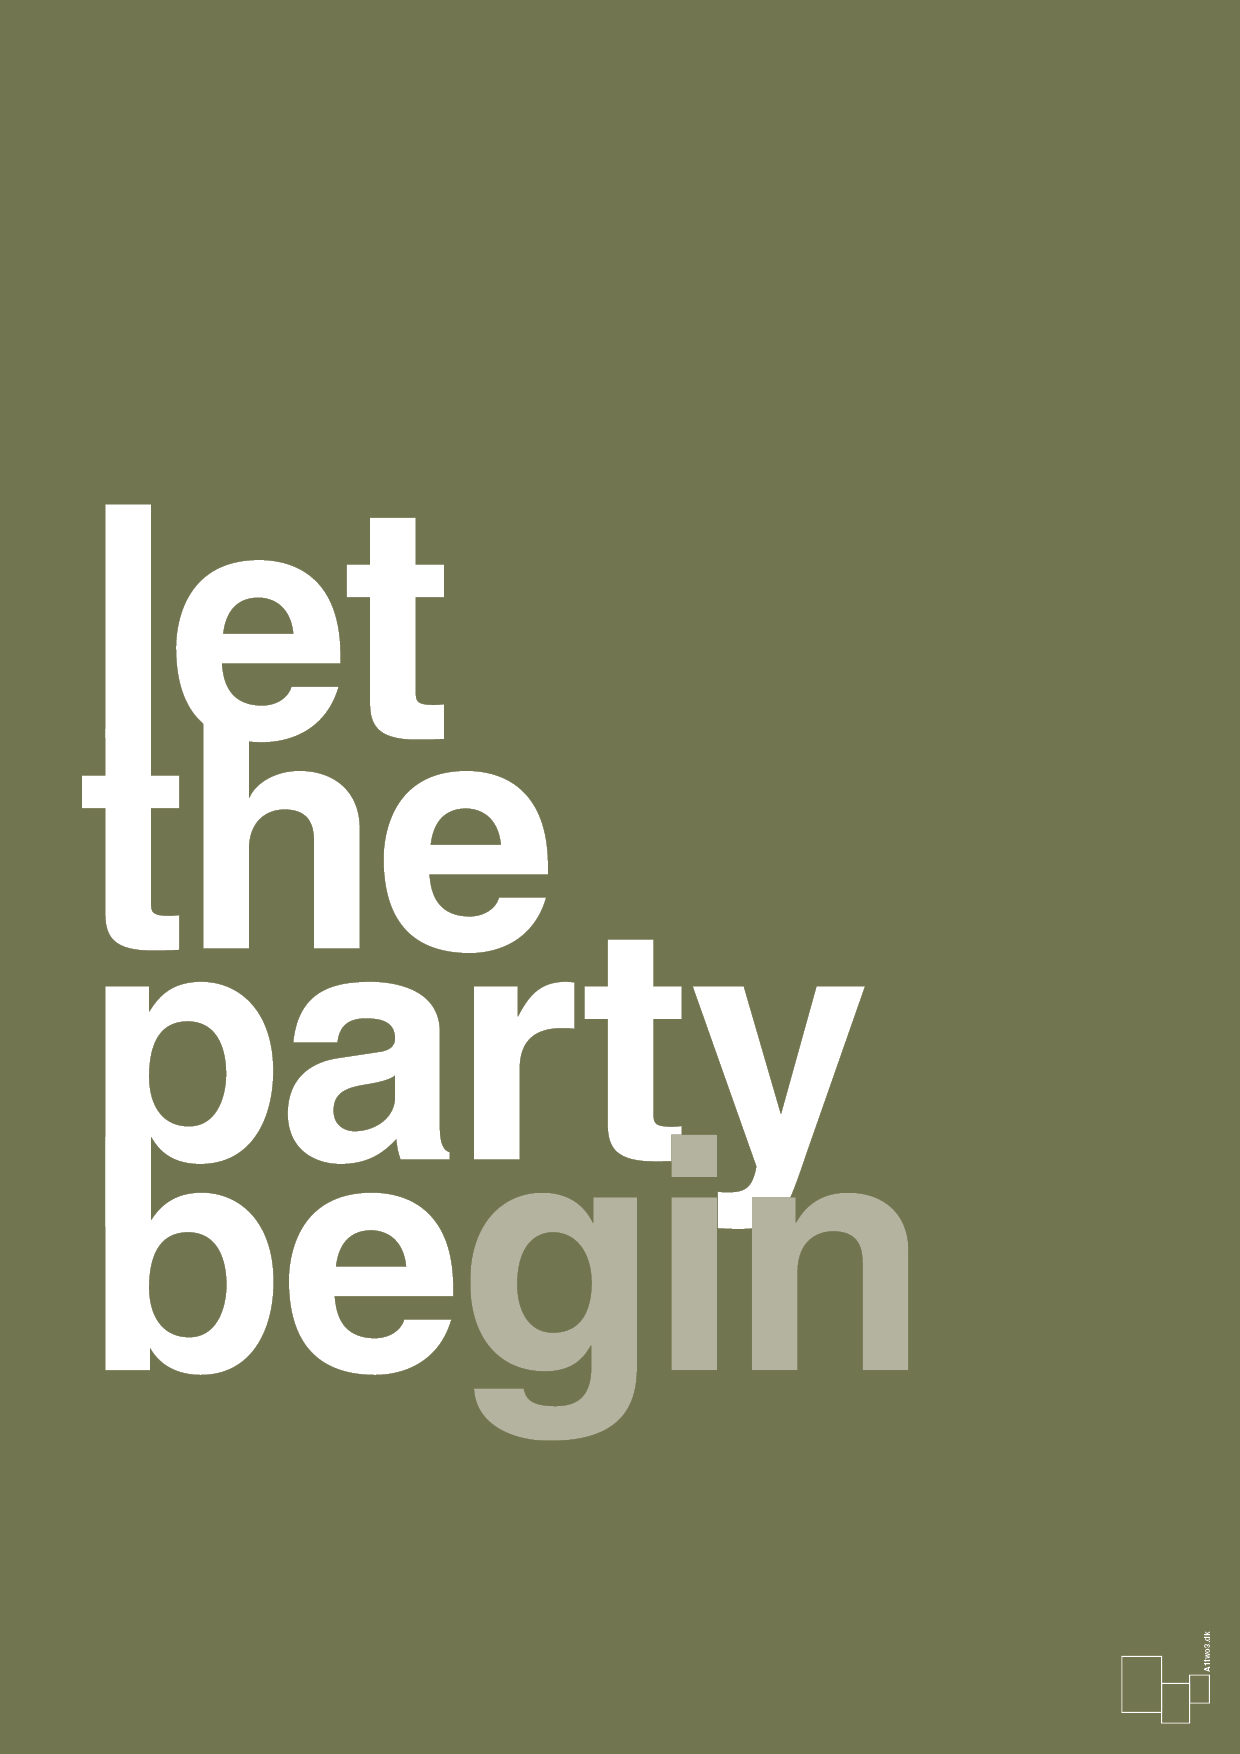 let the party begin - Plakat med Ordsprog i Secret Meadow